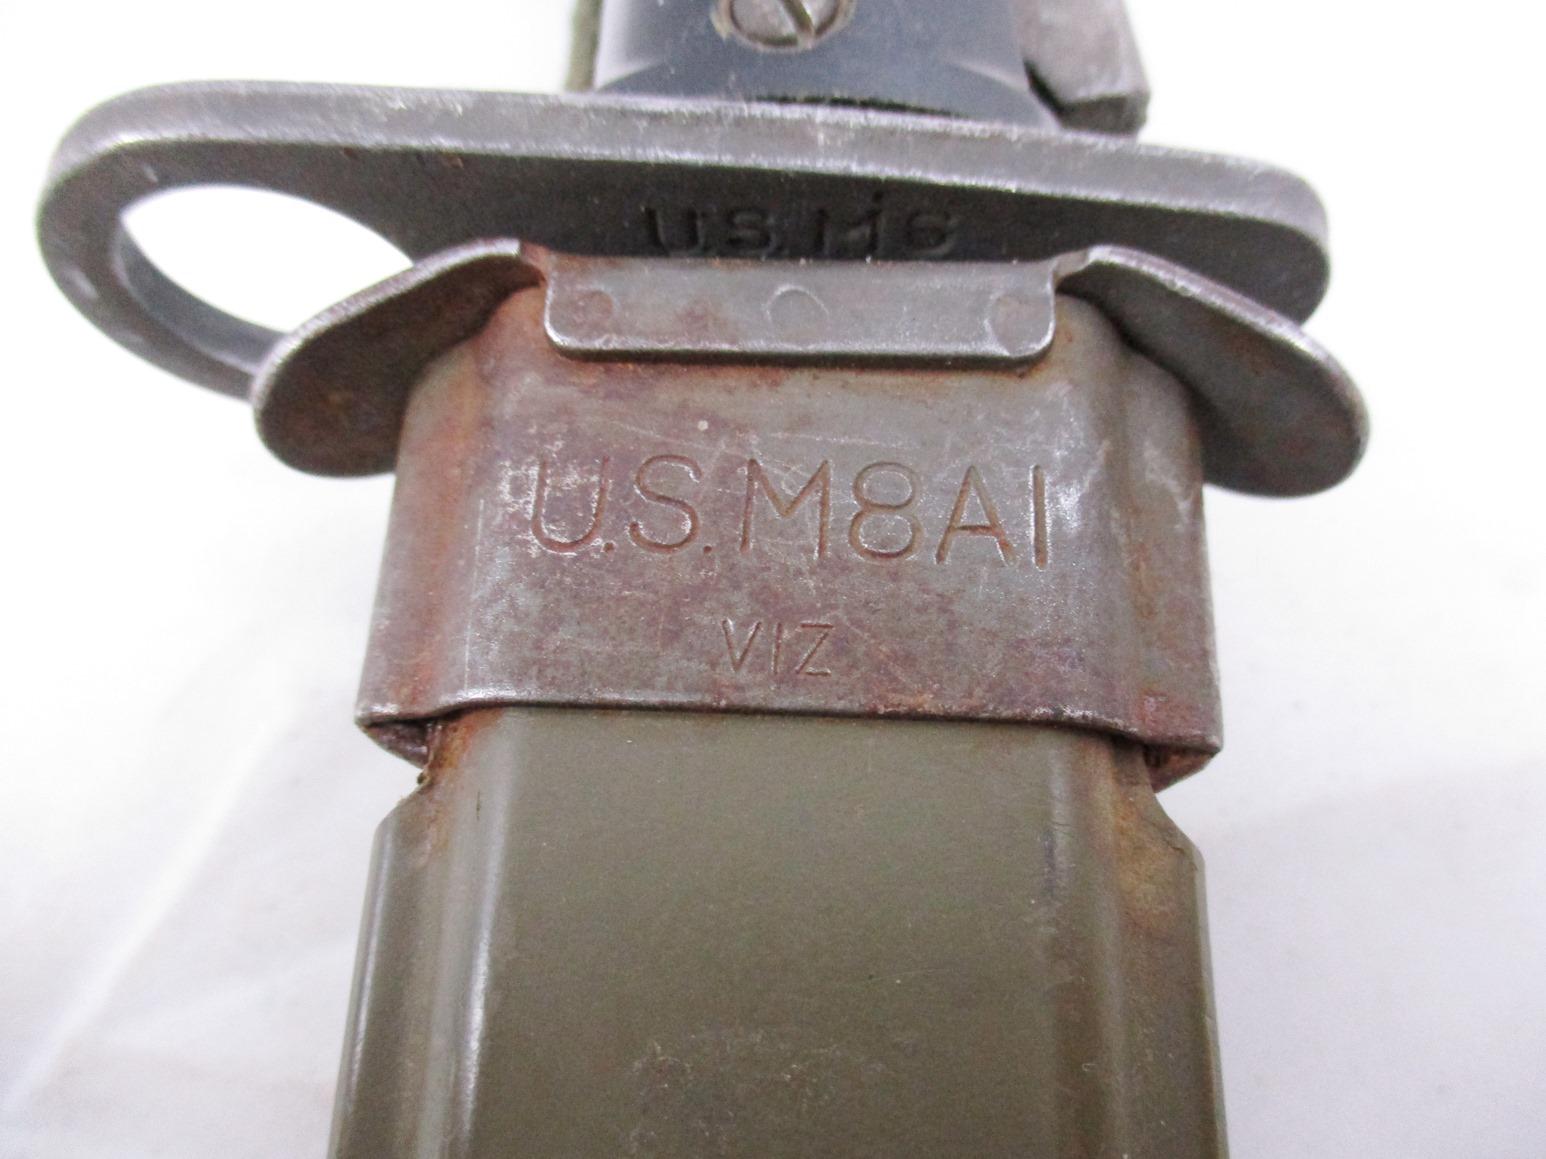 US M6 Imperial Bayonet w/US M8A1 "Viz" Scabbard